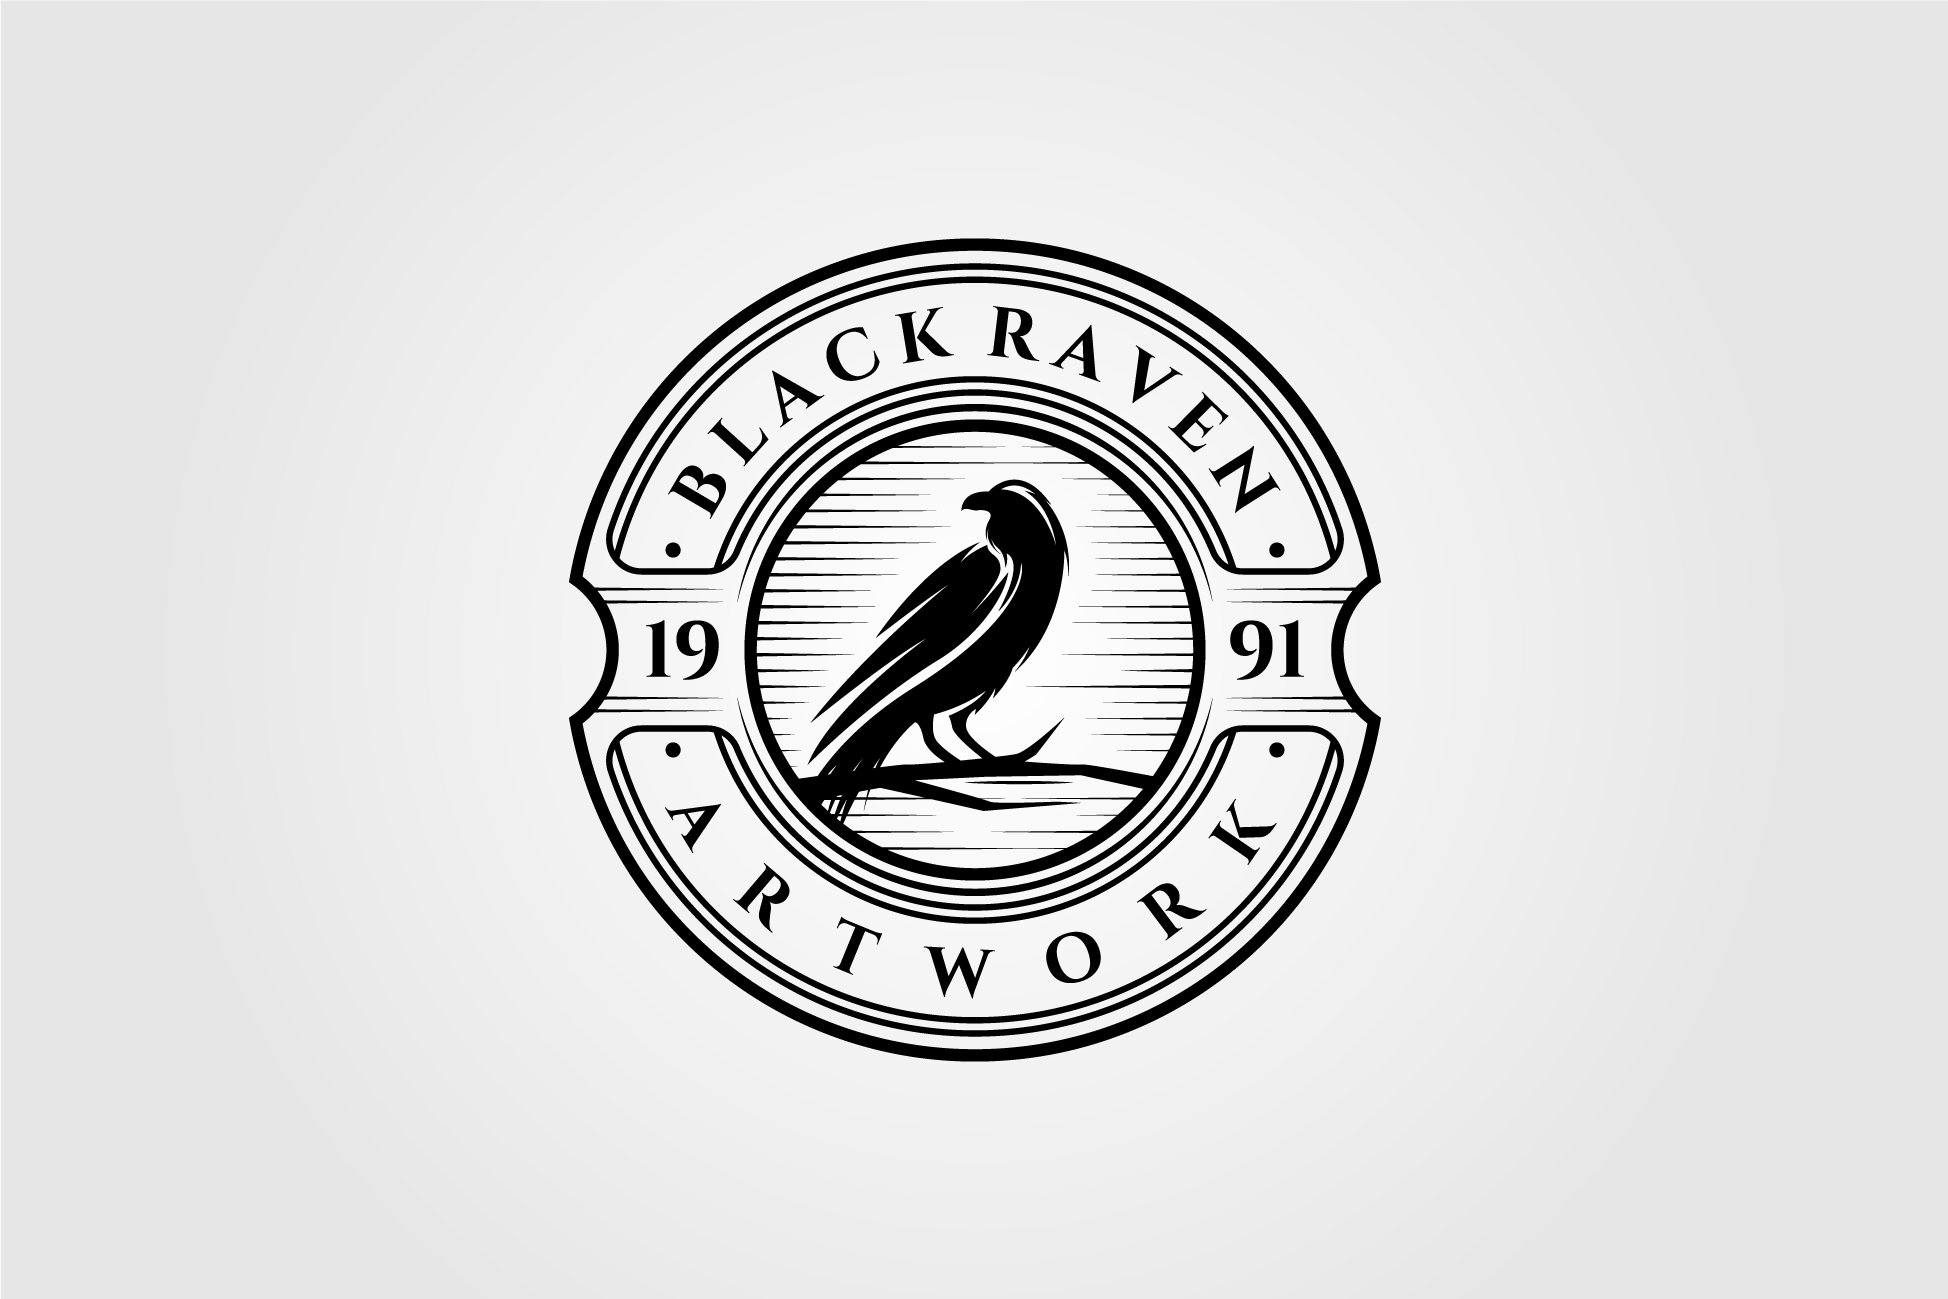 Vintage Black Raven or Crow Logo cover image.